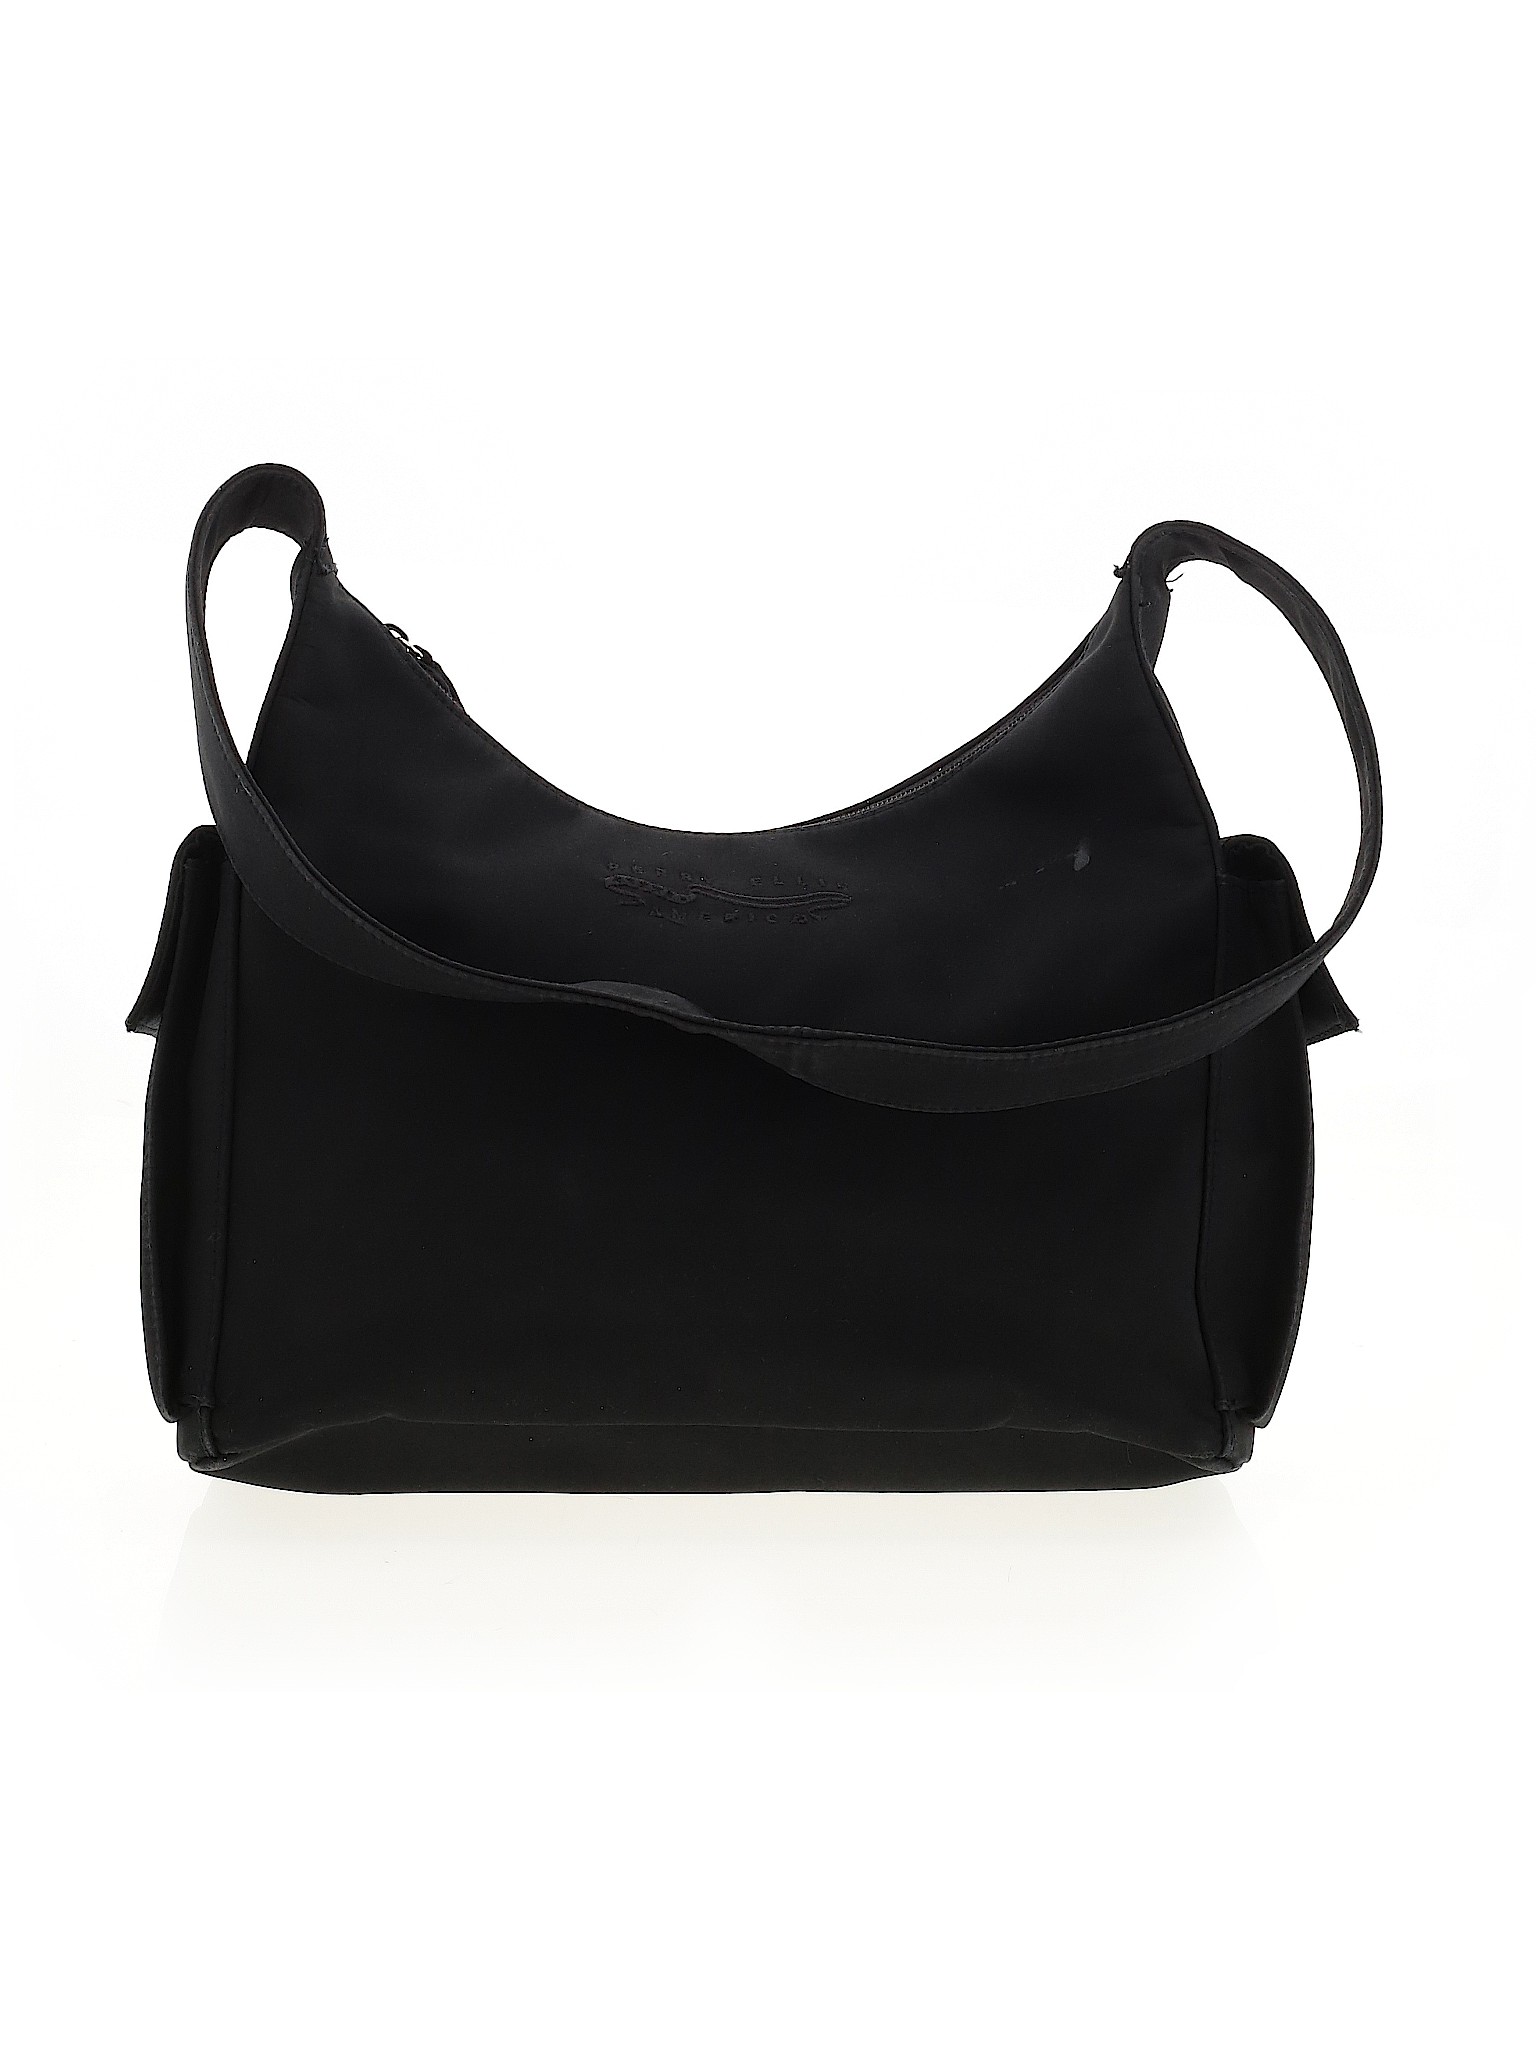 Perry Ellis Women Black Shoulder Bag One Size | eBay